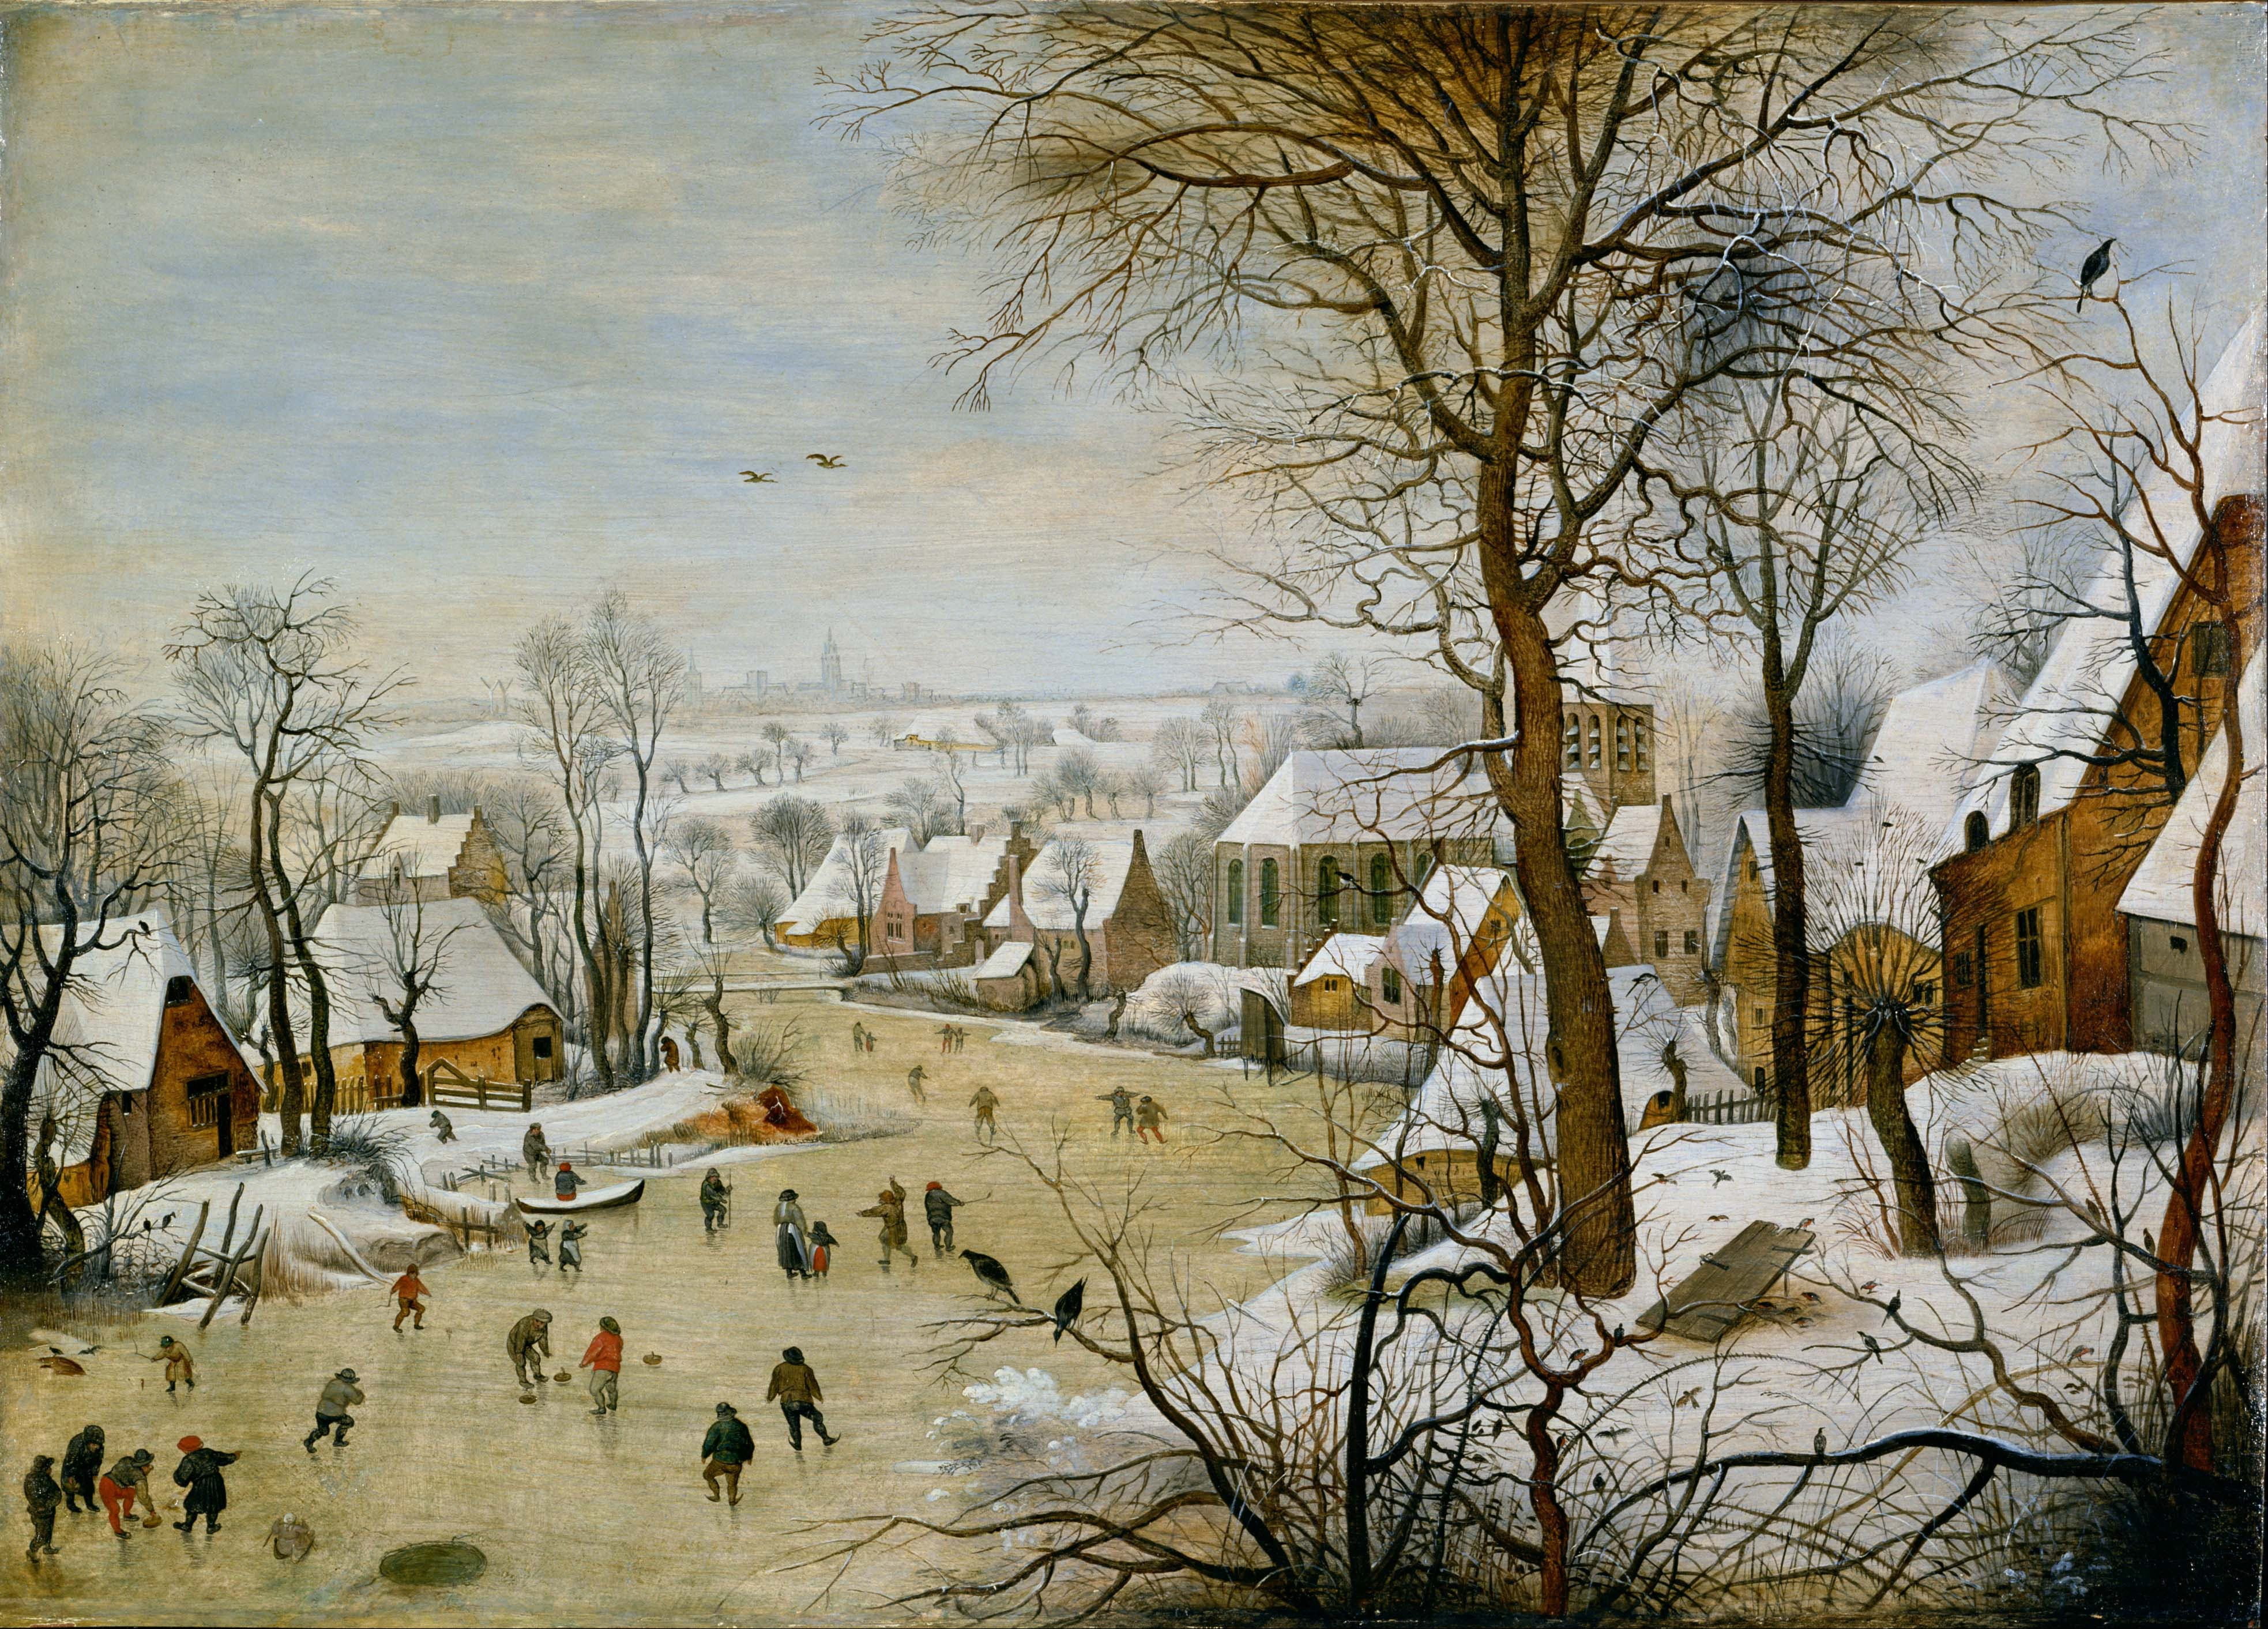 Peisaj de iarnă cu capcană pentru păsări  by Pieter Brueghel the Younger - 1631 - 56.5 x 39 cm 